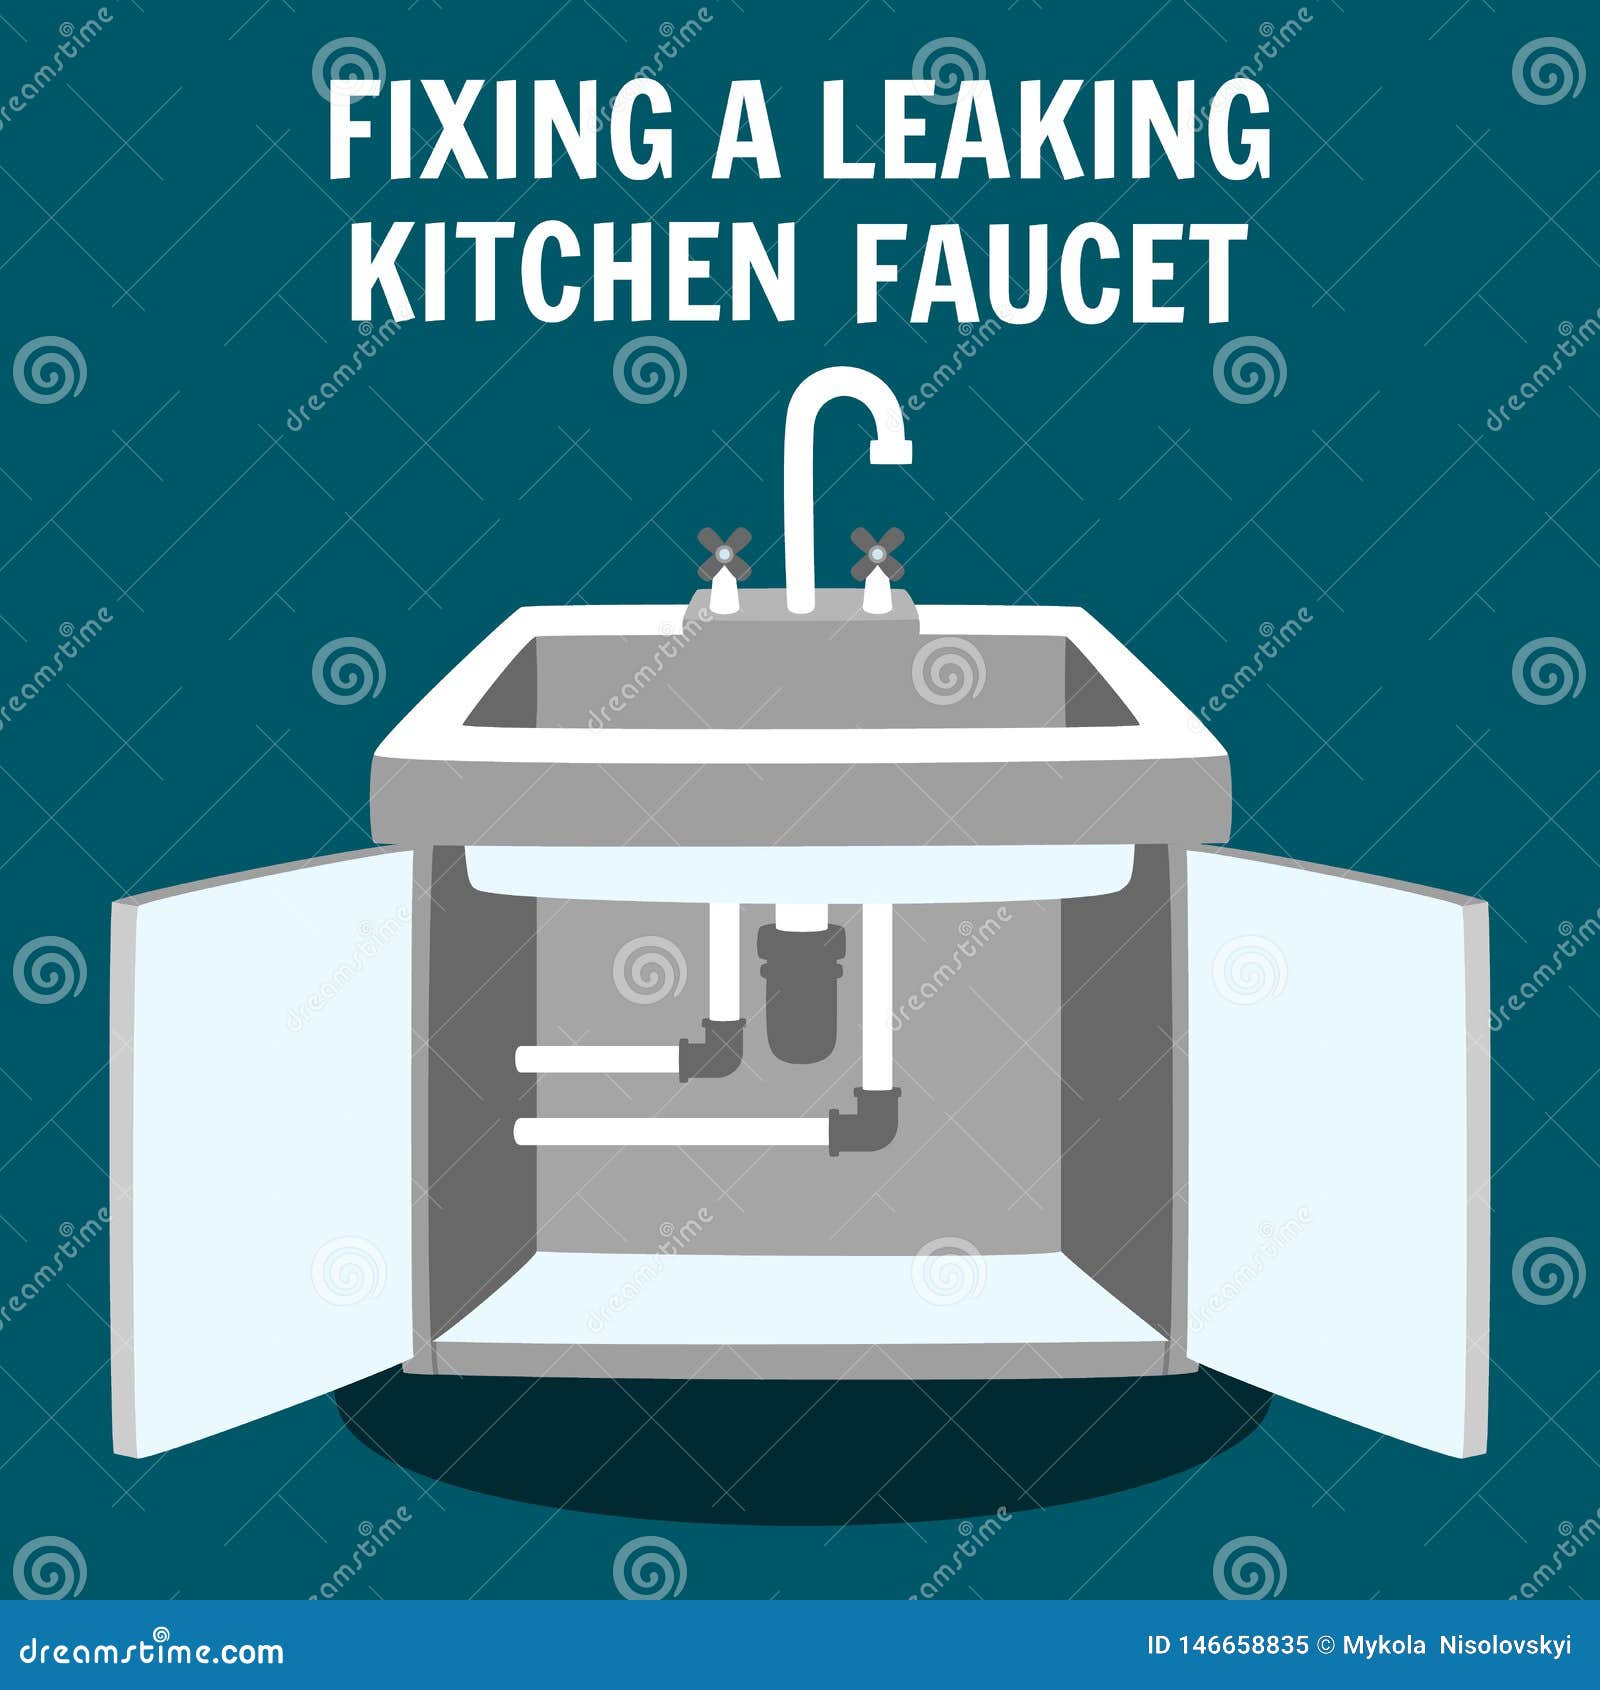 Fixing Leaking Kitchen Faucet Vector Banner Stock Vector